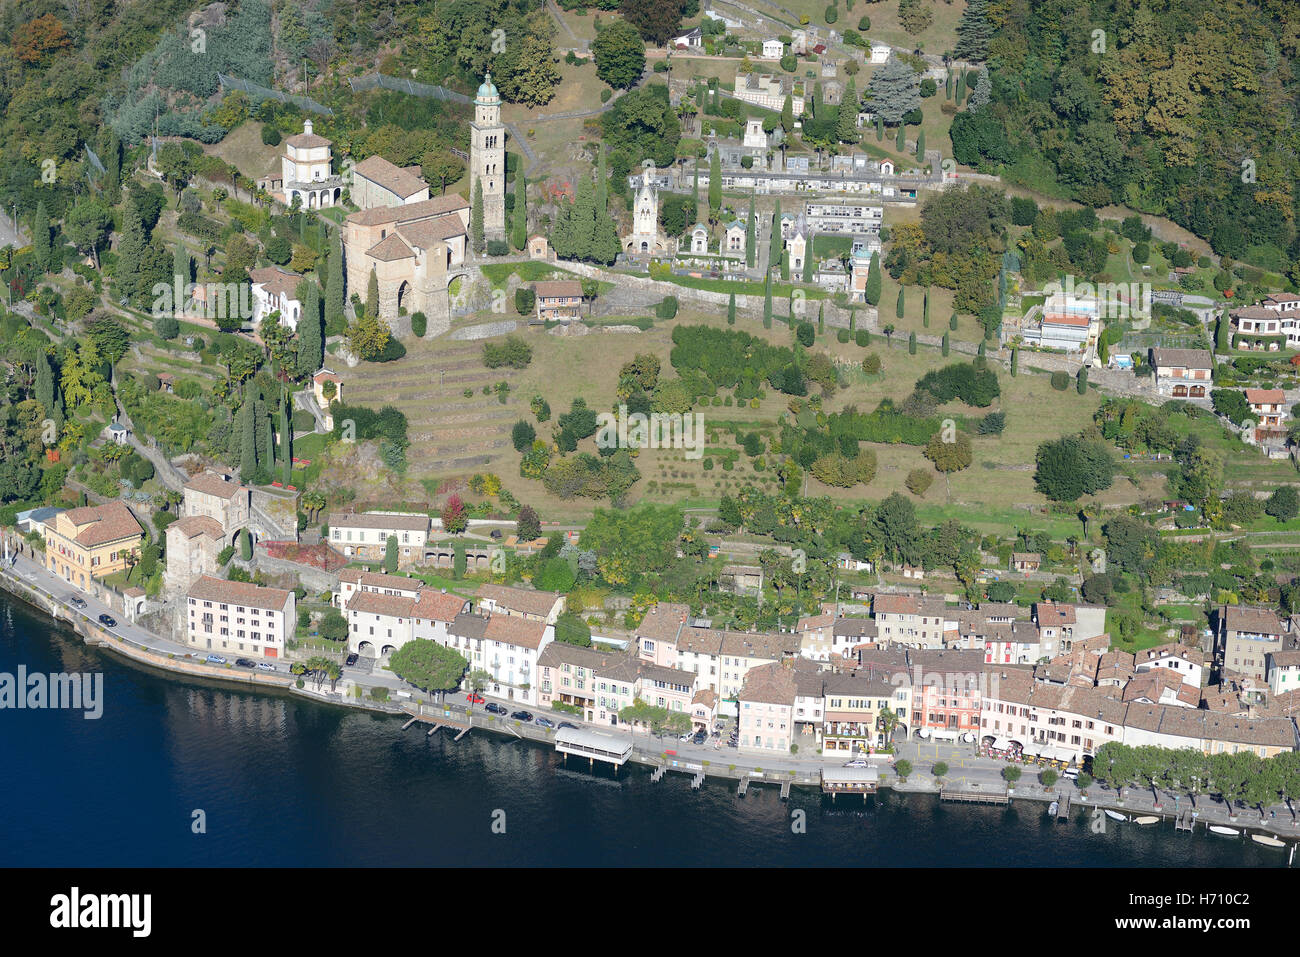 VUE AÉRIENNE. Ville pittoresque de Morcote, au bord du lac. Lac de Lugano, Canton du Tessin, Suisse. Banque D'Images